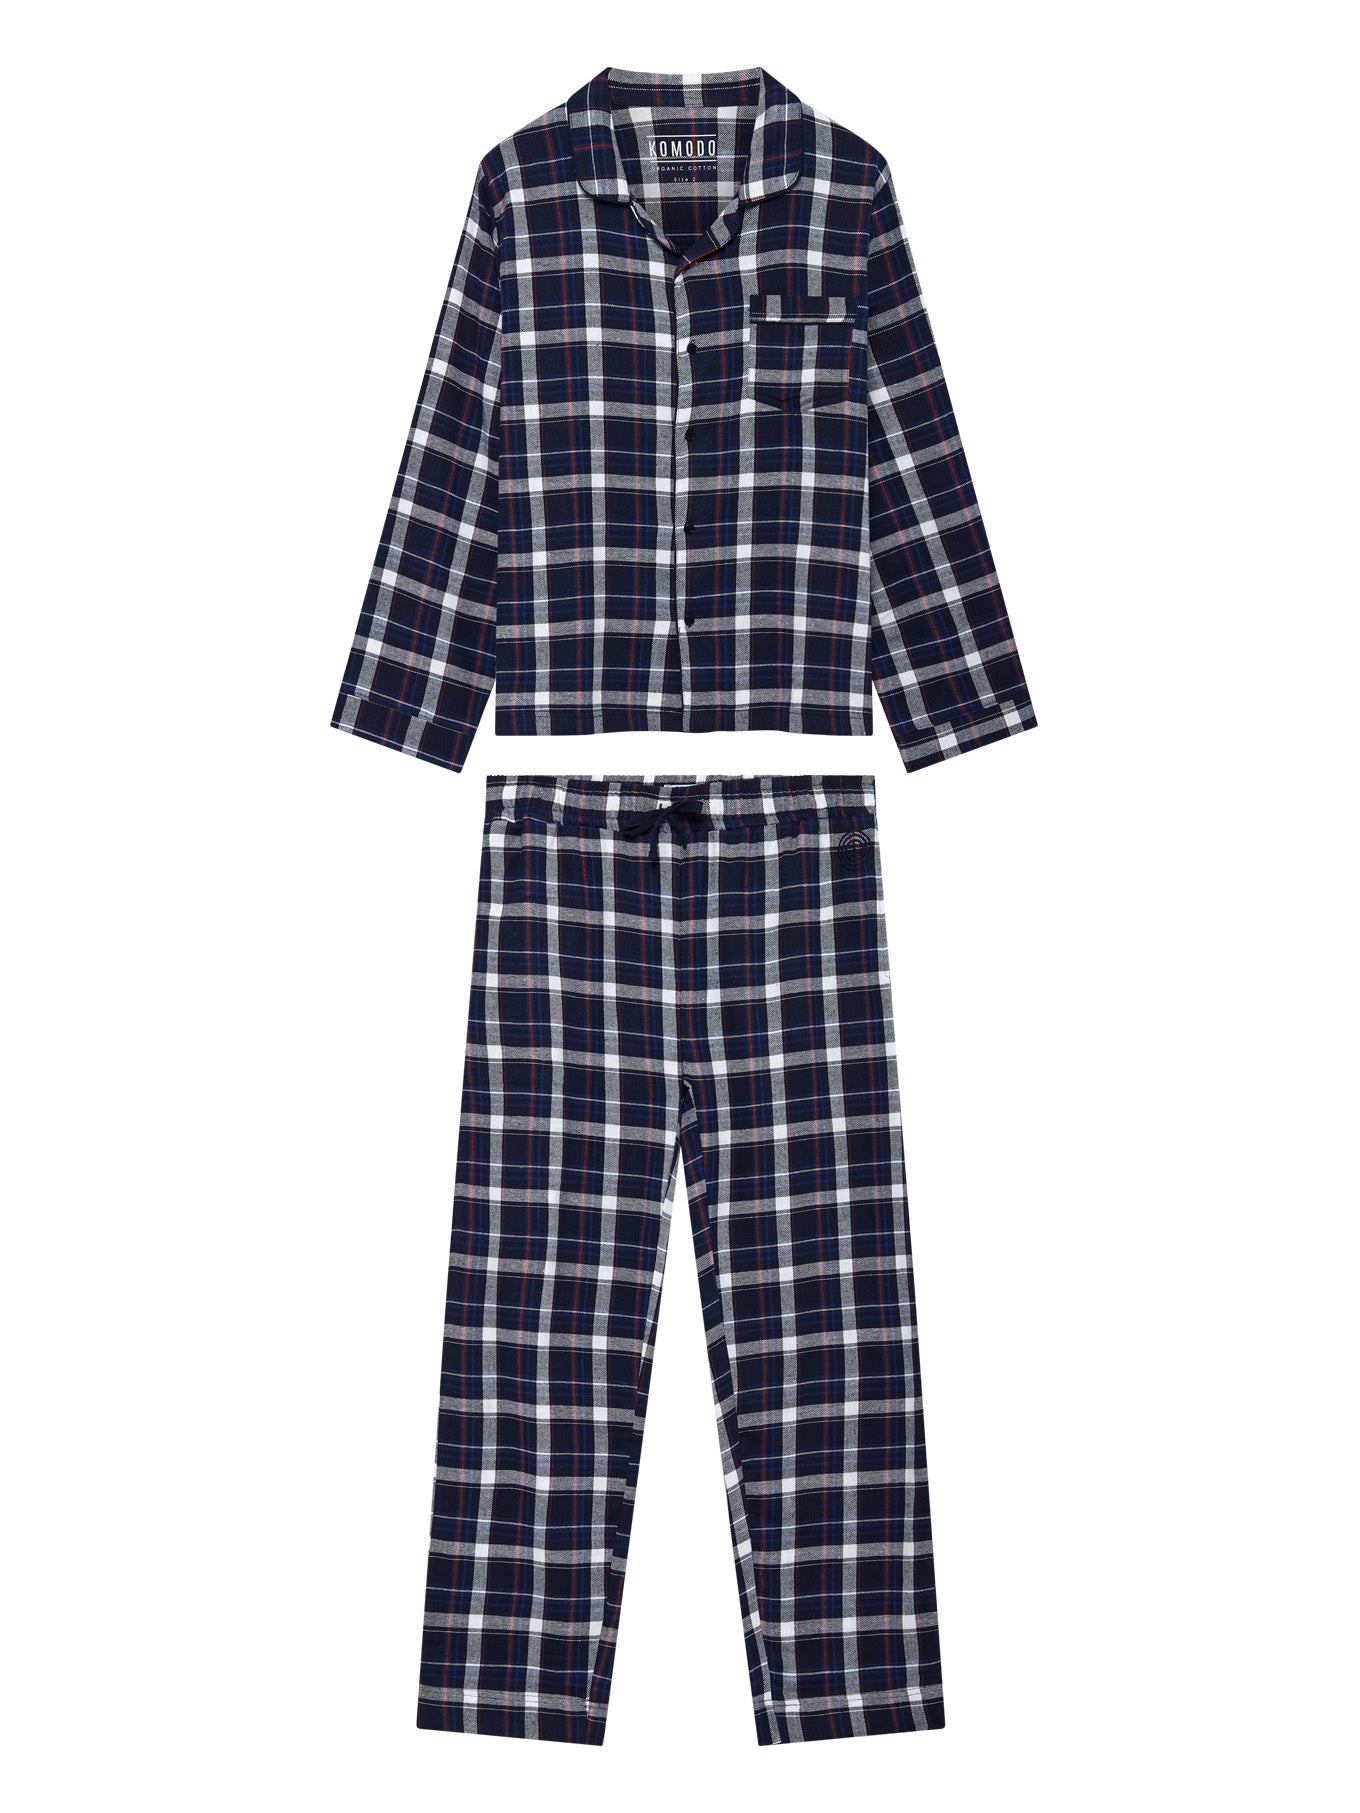 Dunkelblaues Pyjama-Set JIM JAM aus 100% Bio-Baumwolle von Komodo